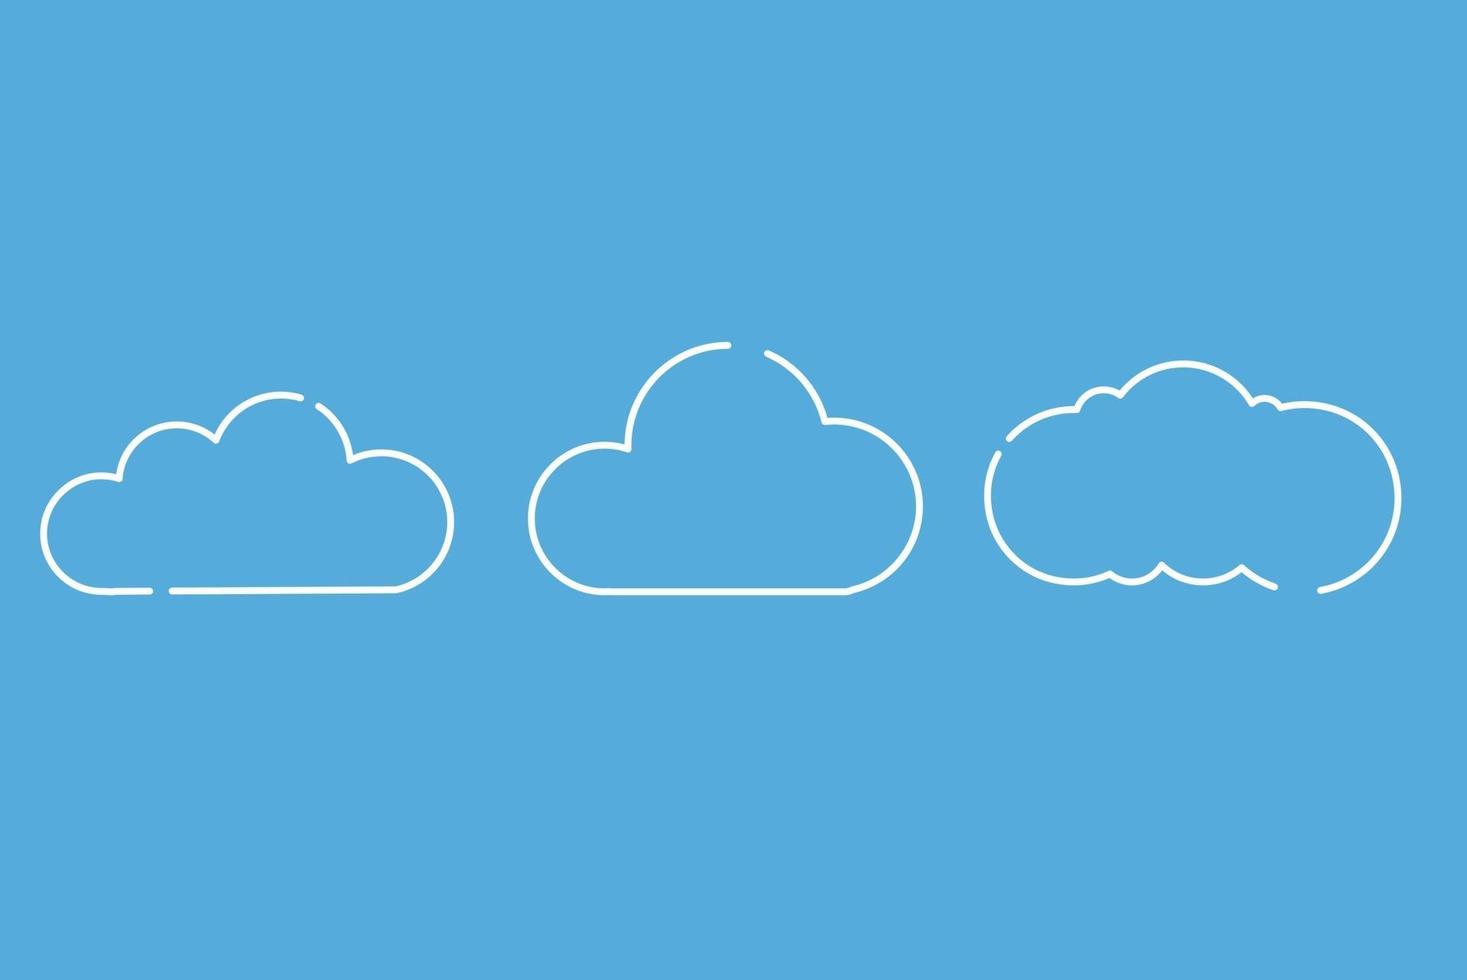 Satz von Wolkensymbolen im trendigen flachen Stil lokalisiert auf blauem Hintergrund vektor